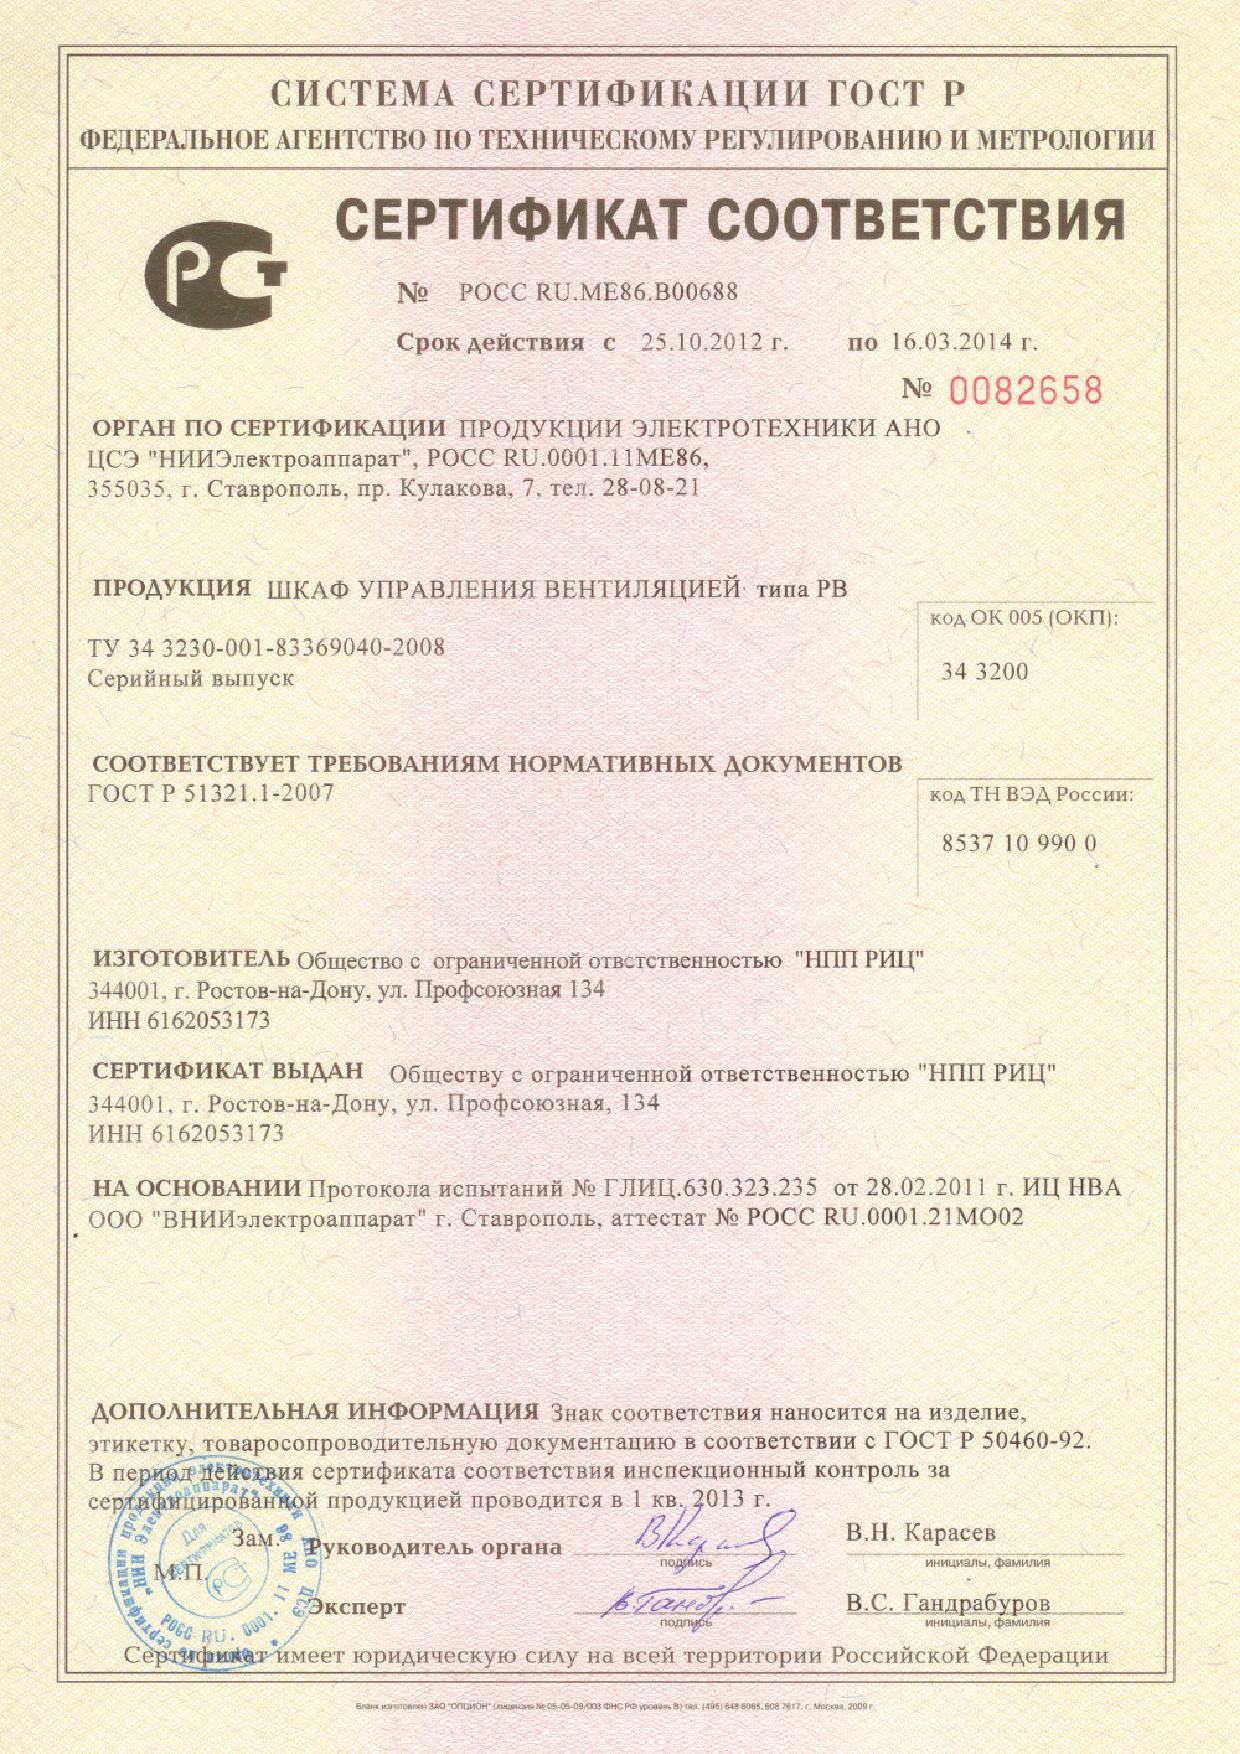 2012-10-25-2014-03-16-certificate-RV